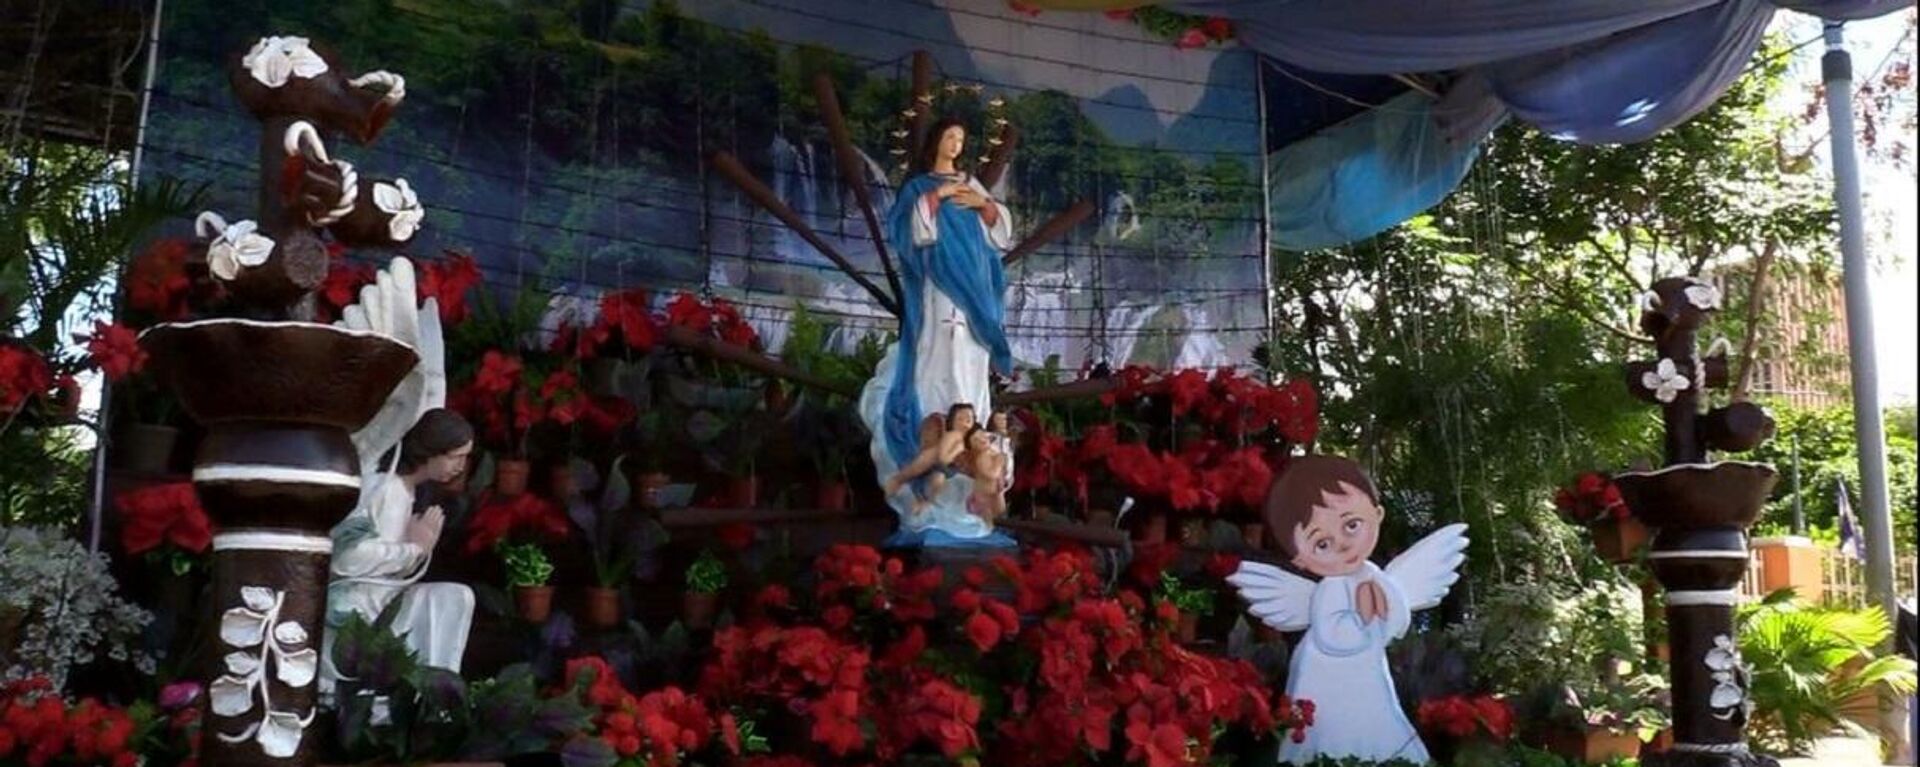 La Purísima: altares a la Virgen María en Nicaragua - Sputnik Mundo, 1920, 07.12.2021